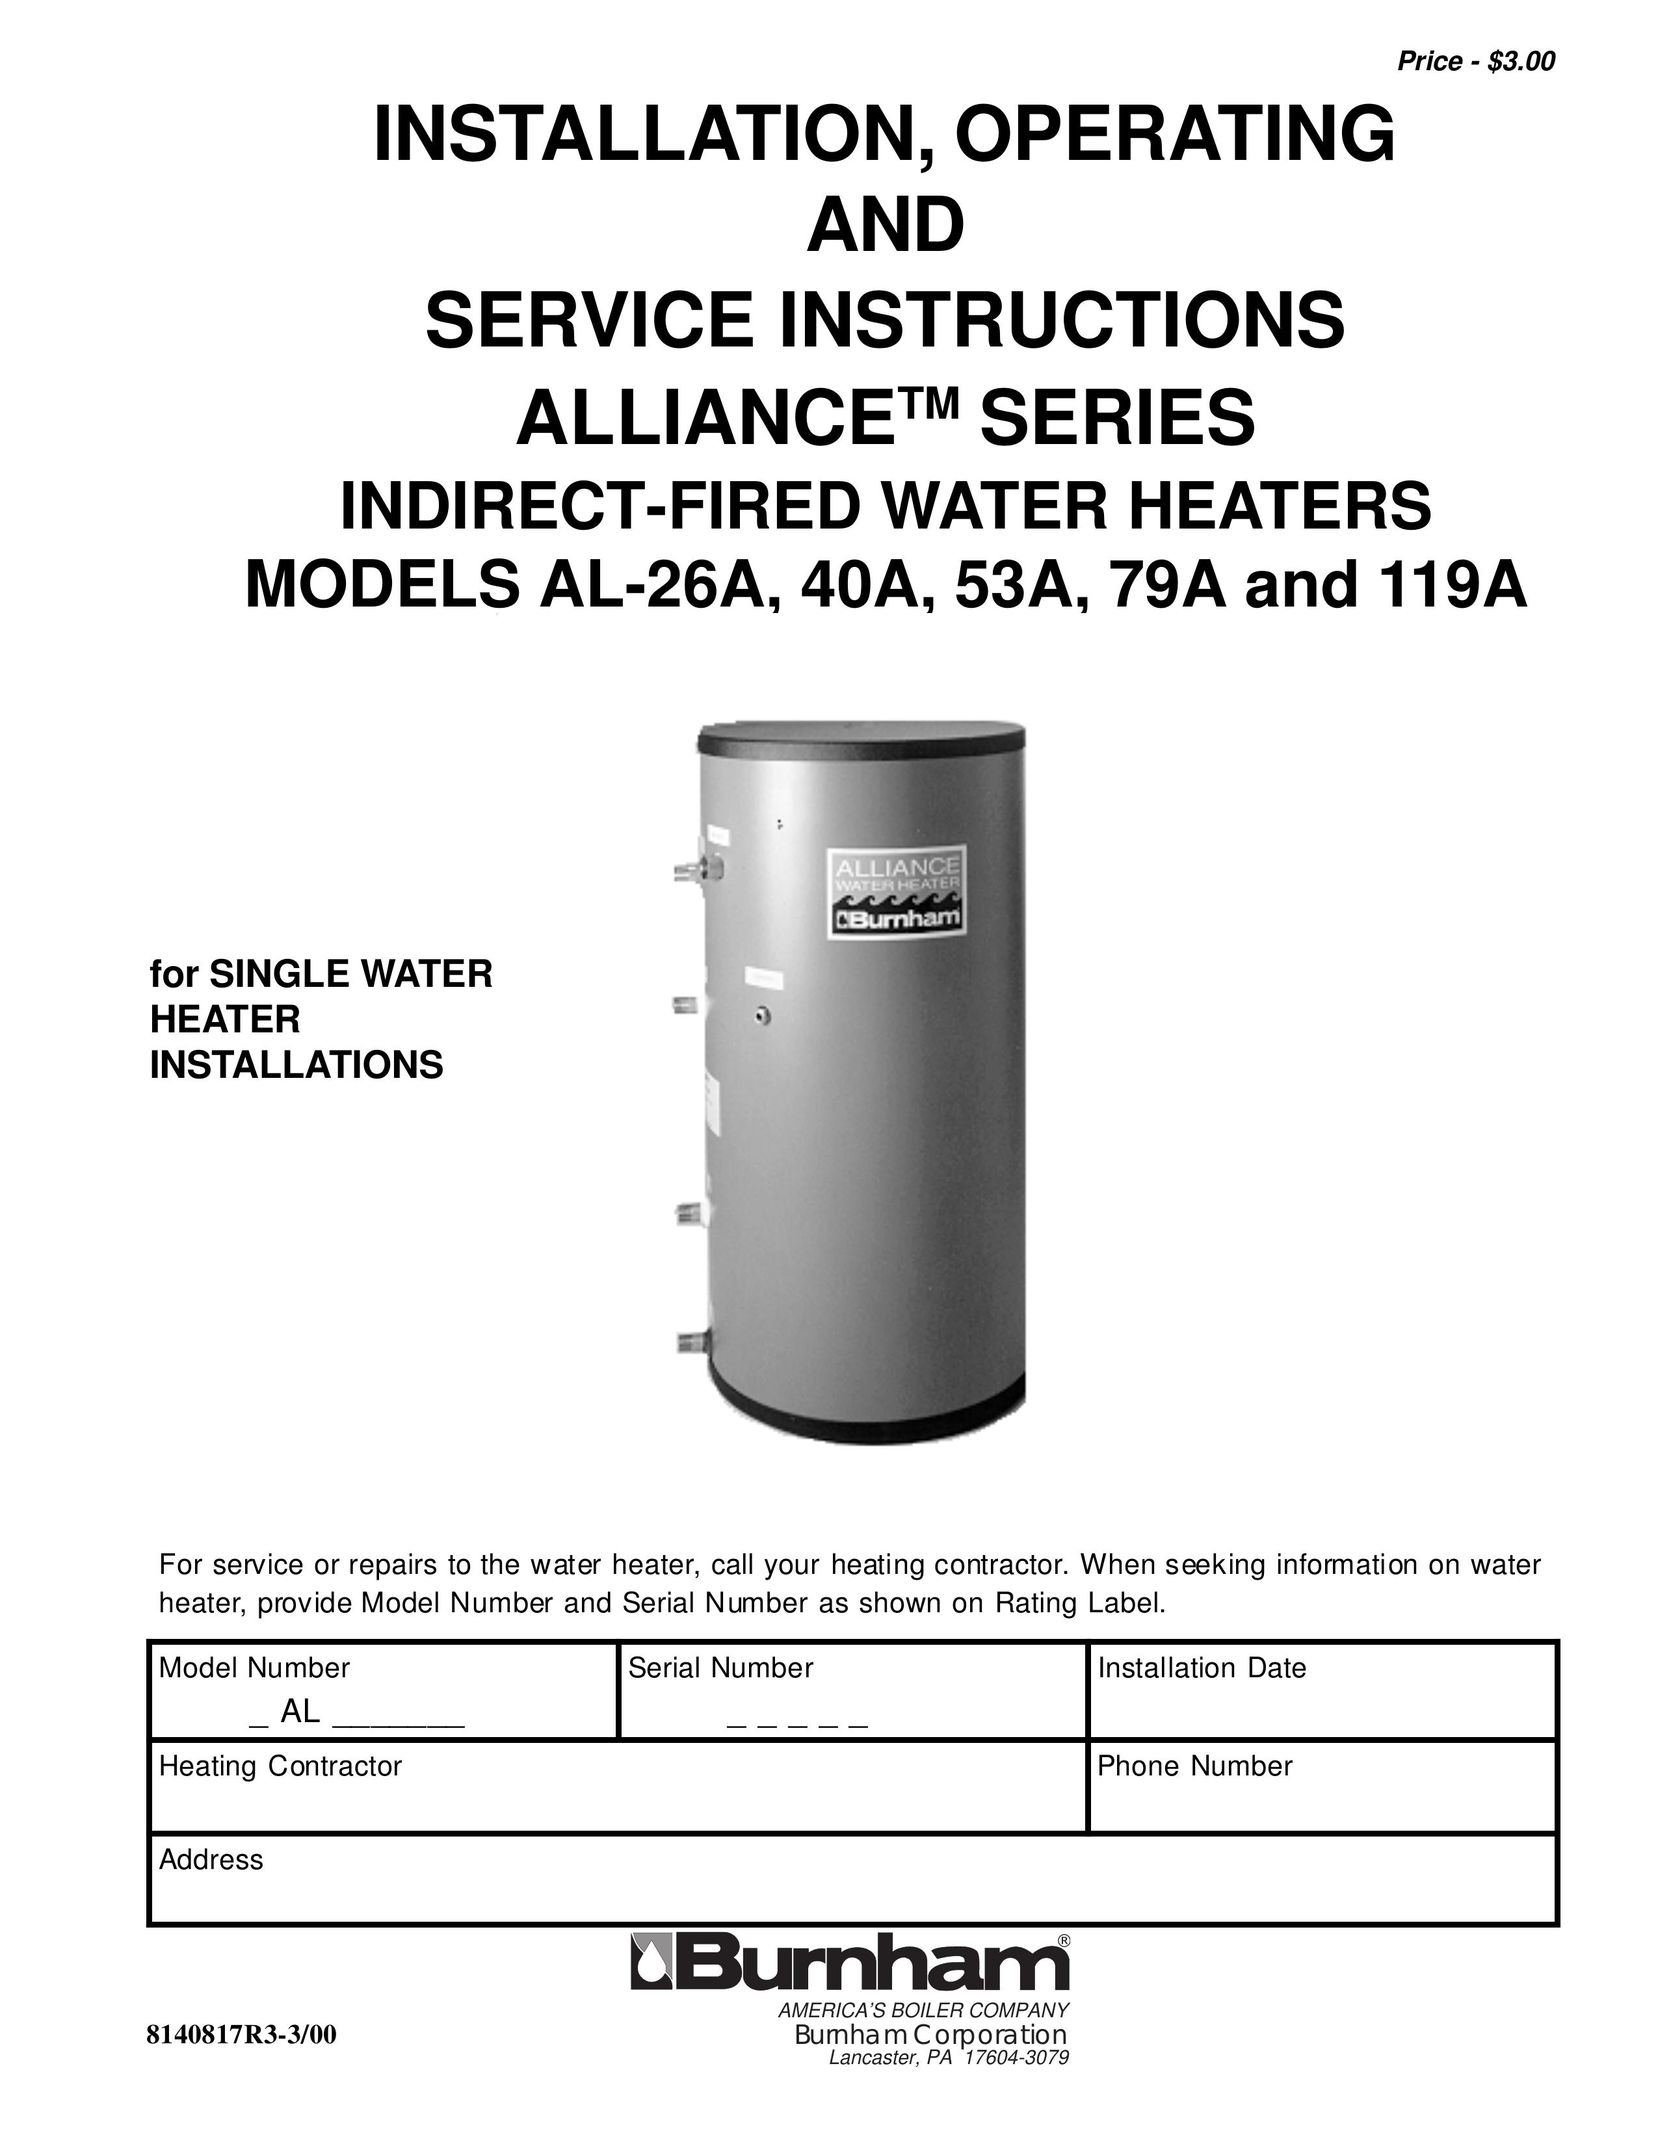 Burnham AL-26A Water Heater User Manual